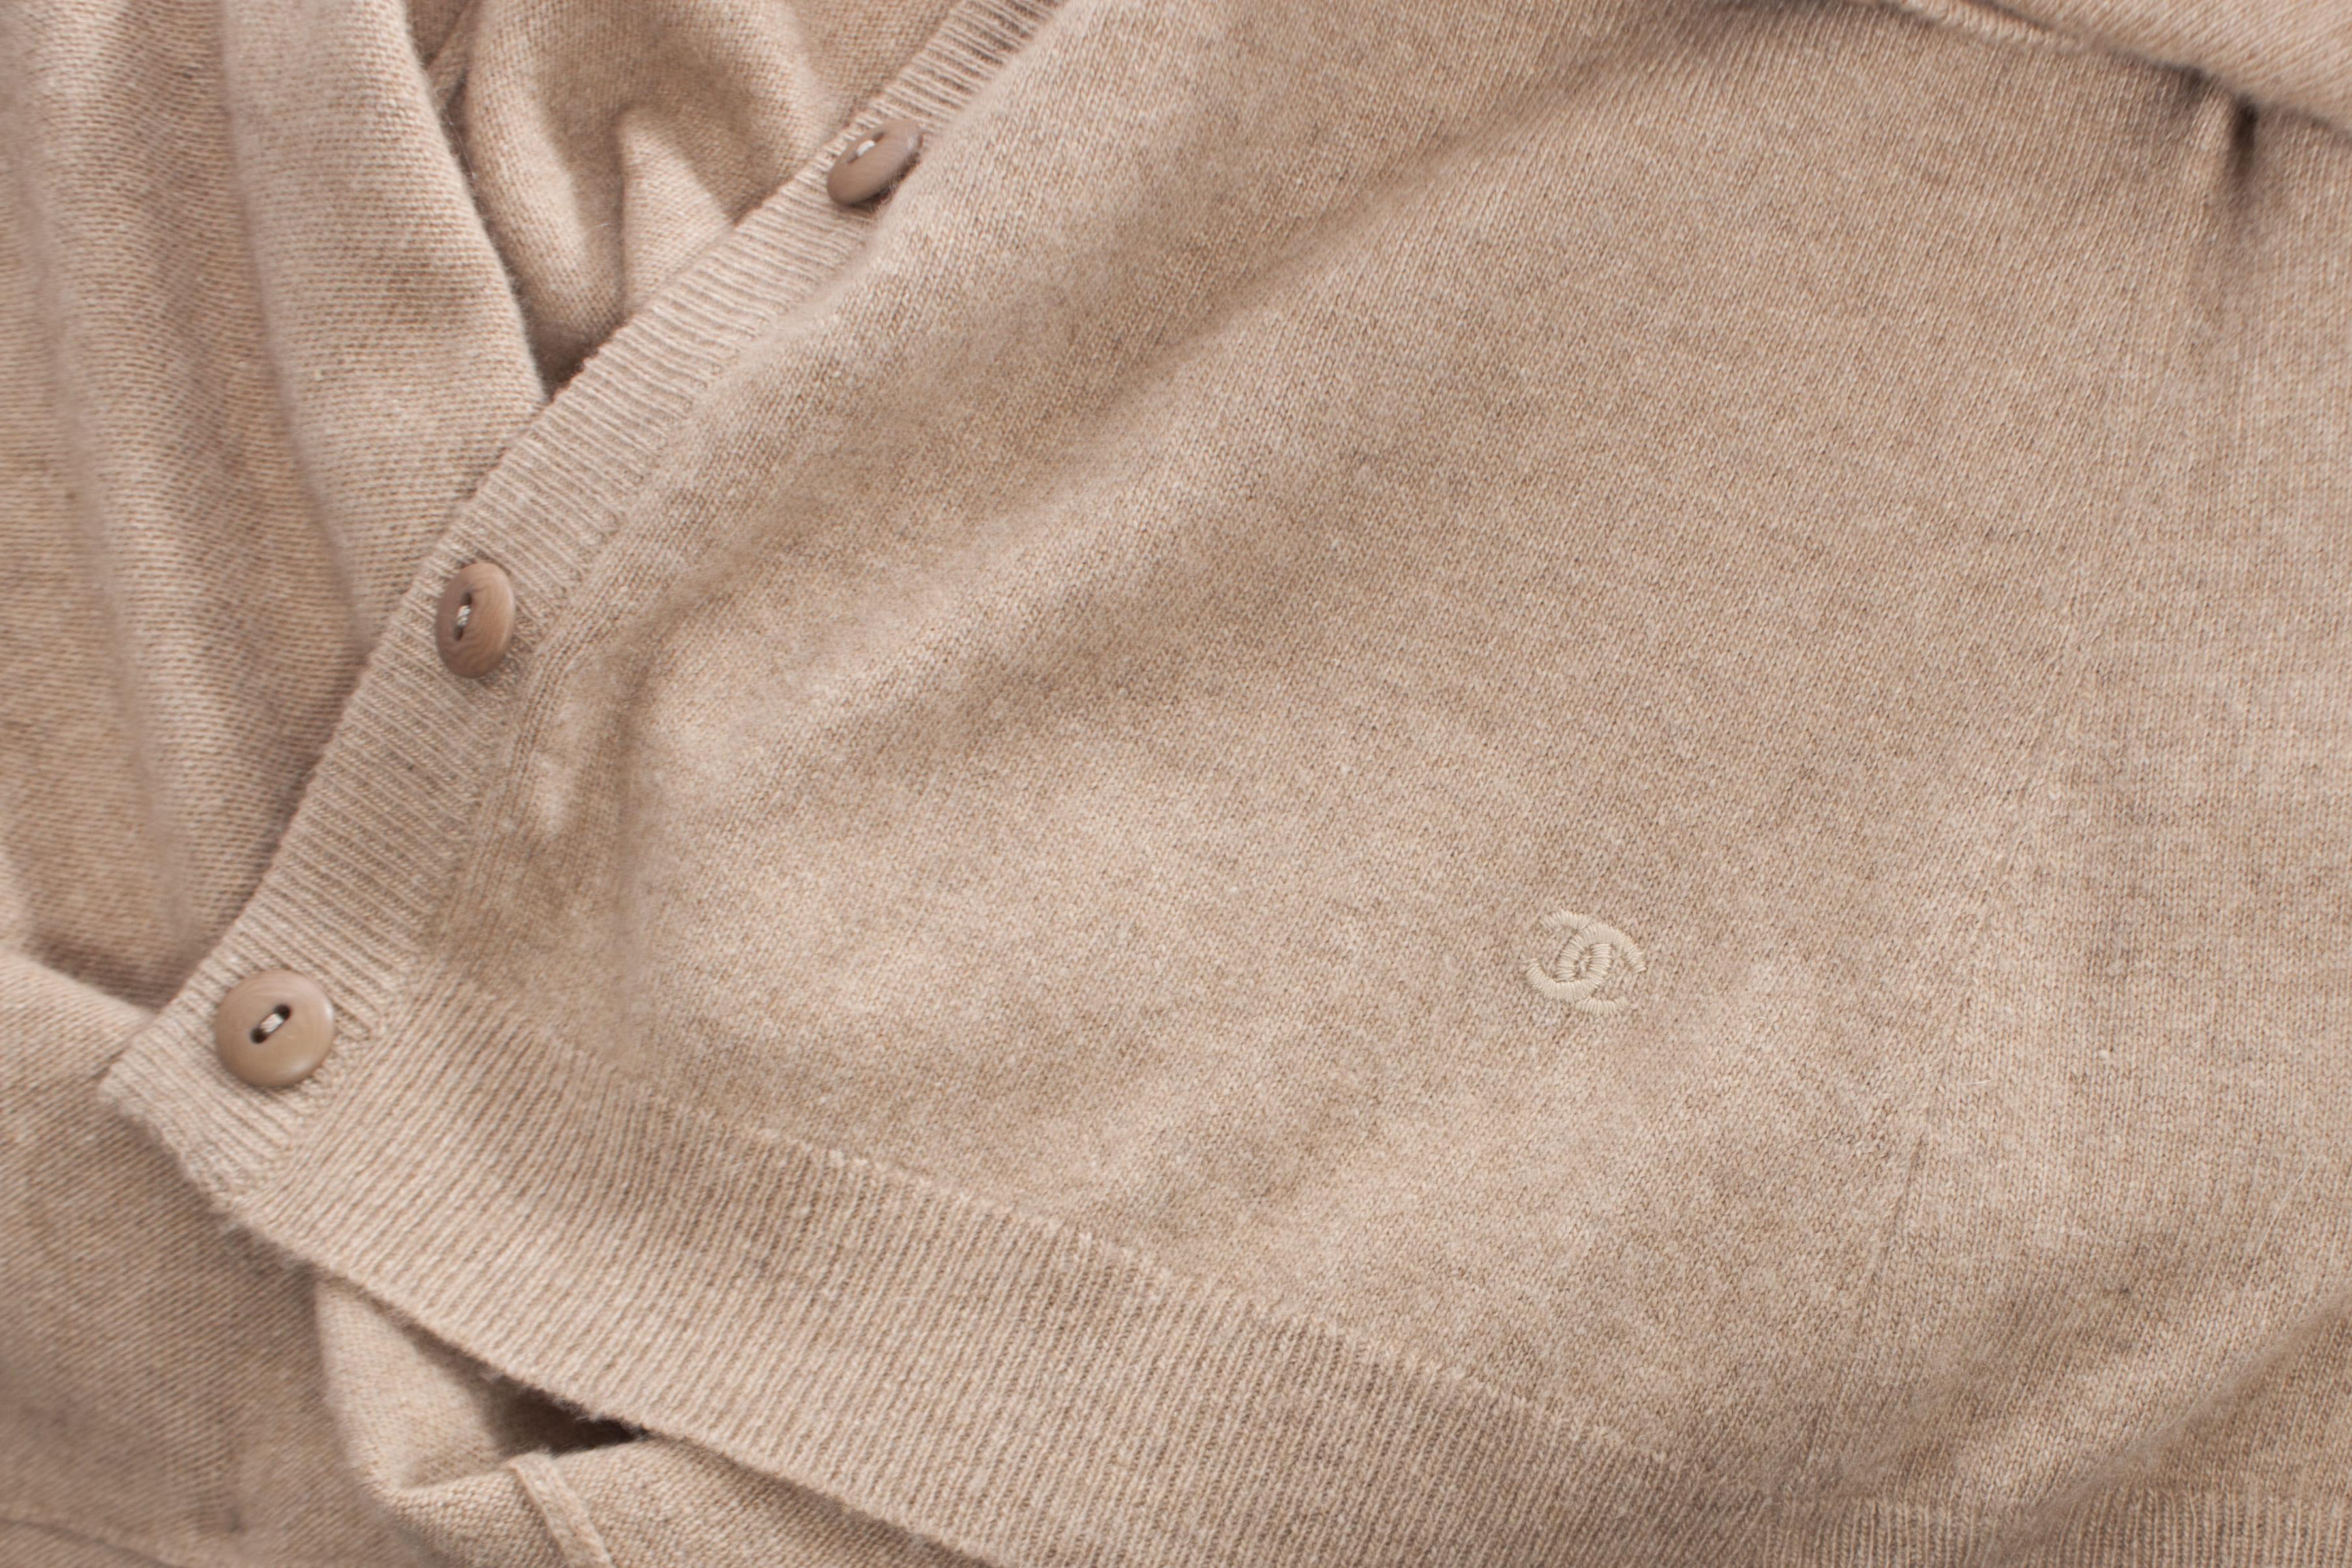 Chanel, cardigan en cachemire camel en taille FR38/S avec boutons en bois, 2 poches et logo cousu à côté de la poche gauche. Ce produit est en très bon état.

• ÉTAT : très bon

• TAILLE : FR38/S

• MESURES : longueur 70 cm, largeur 50 cm, taille